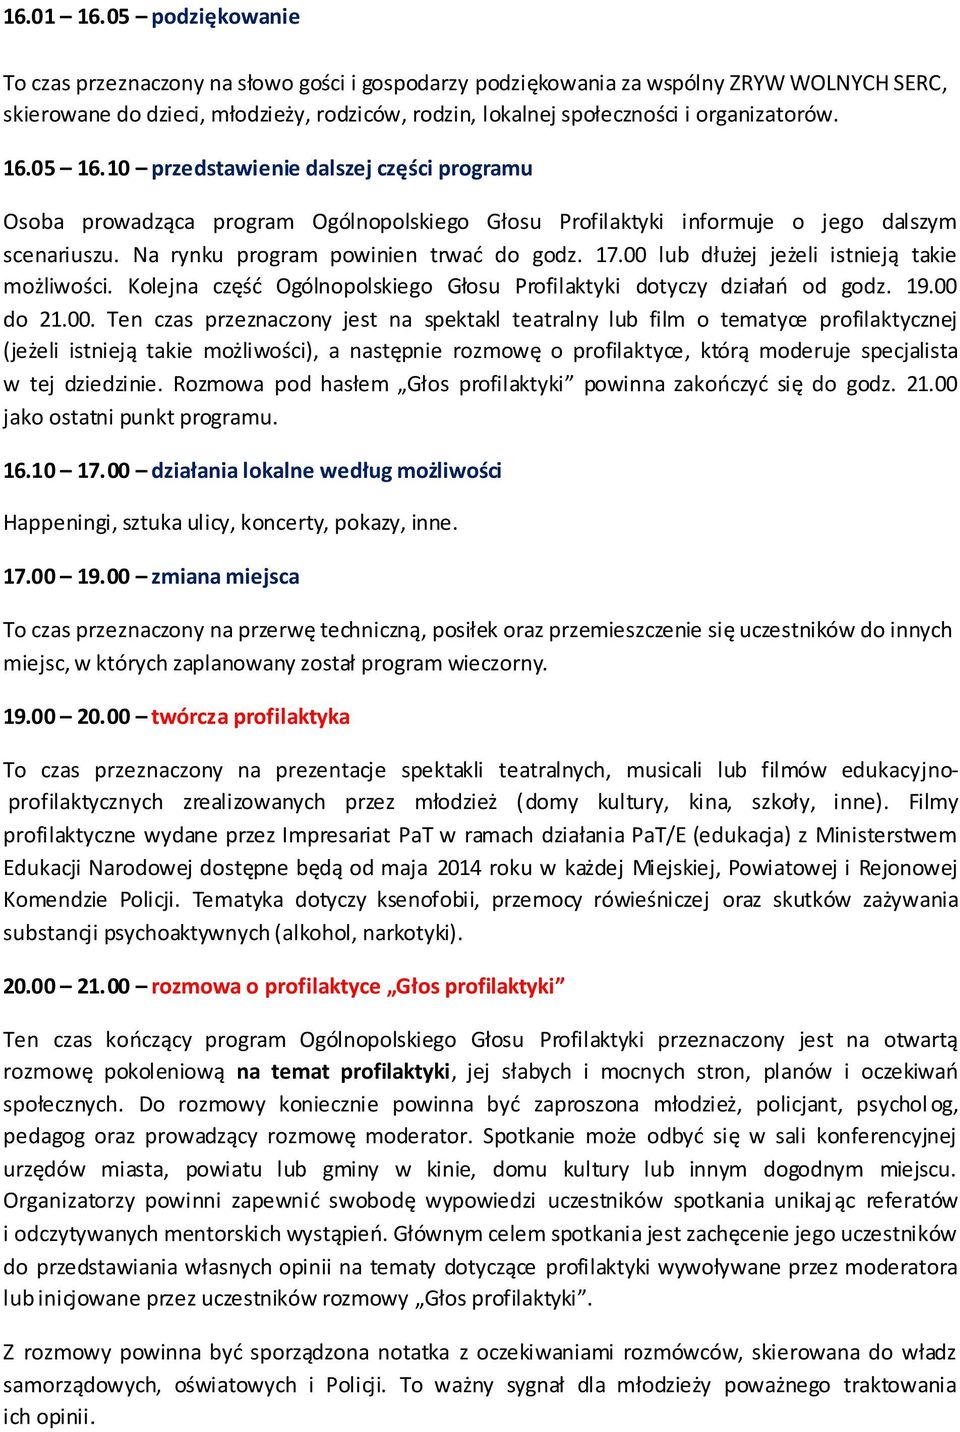 16.05 16.10 przedstawienie dalszej części programu Osoba prowadząca program Ogólnopolskiego Głosu Profilaktyki informuje o jego dalszym scenariuszu. Na rynku program powinien trwać do godz. 17.